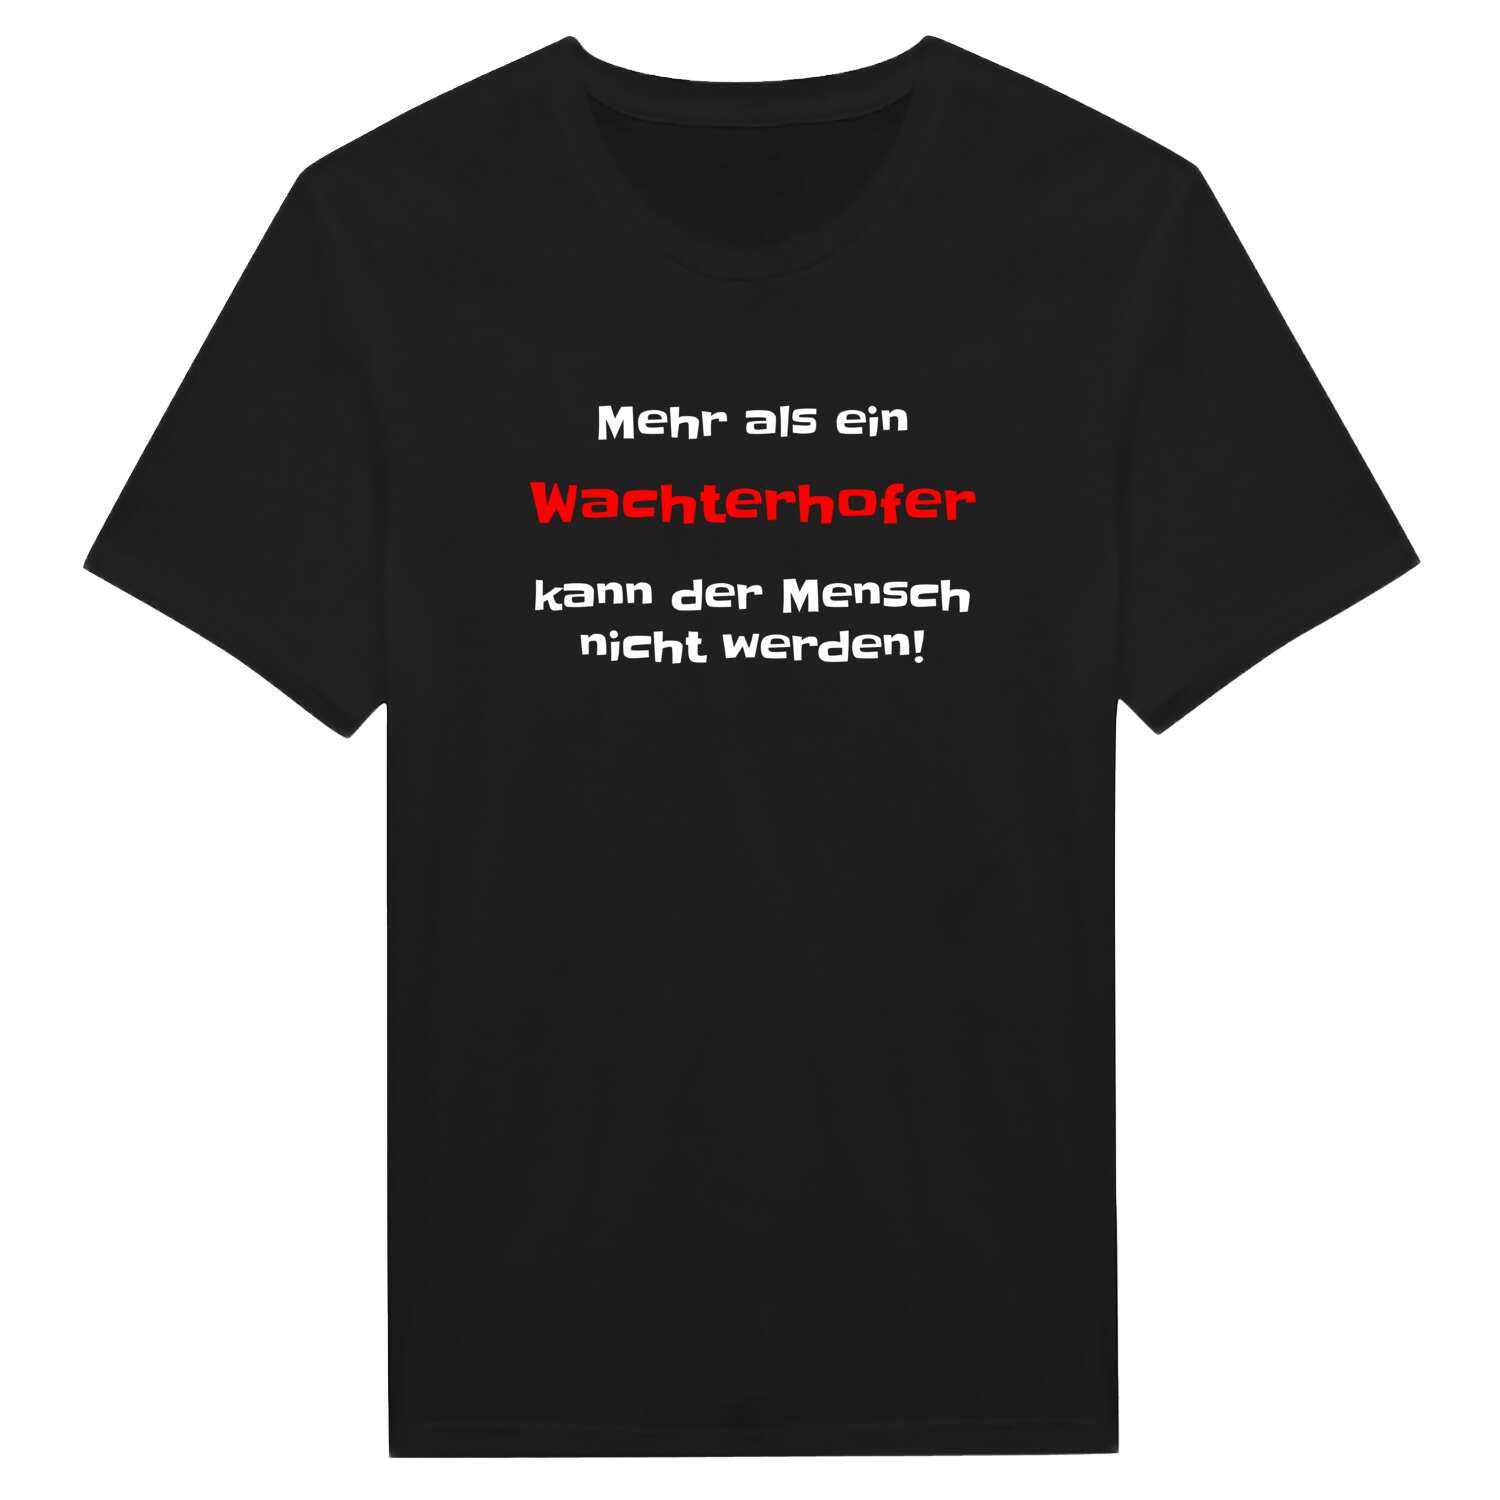 Wachterhof T-Shirt »Mehr als ein«